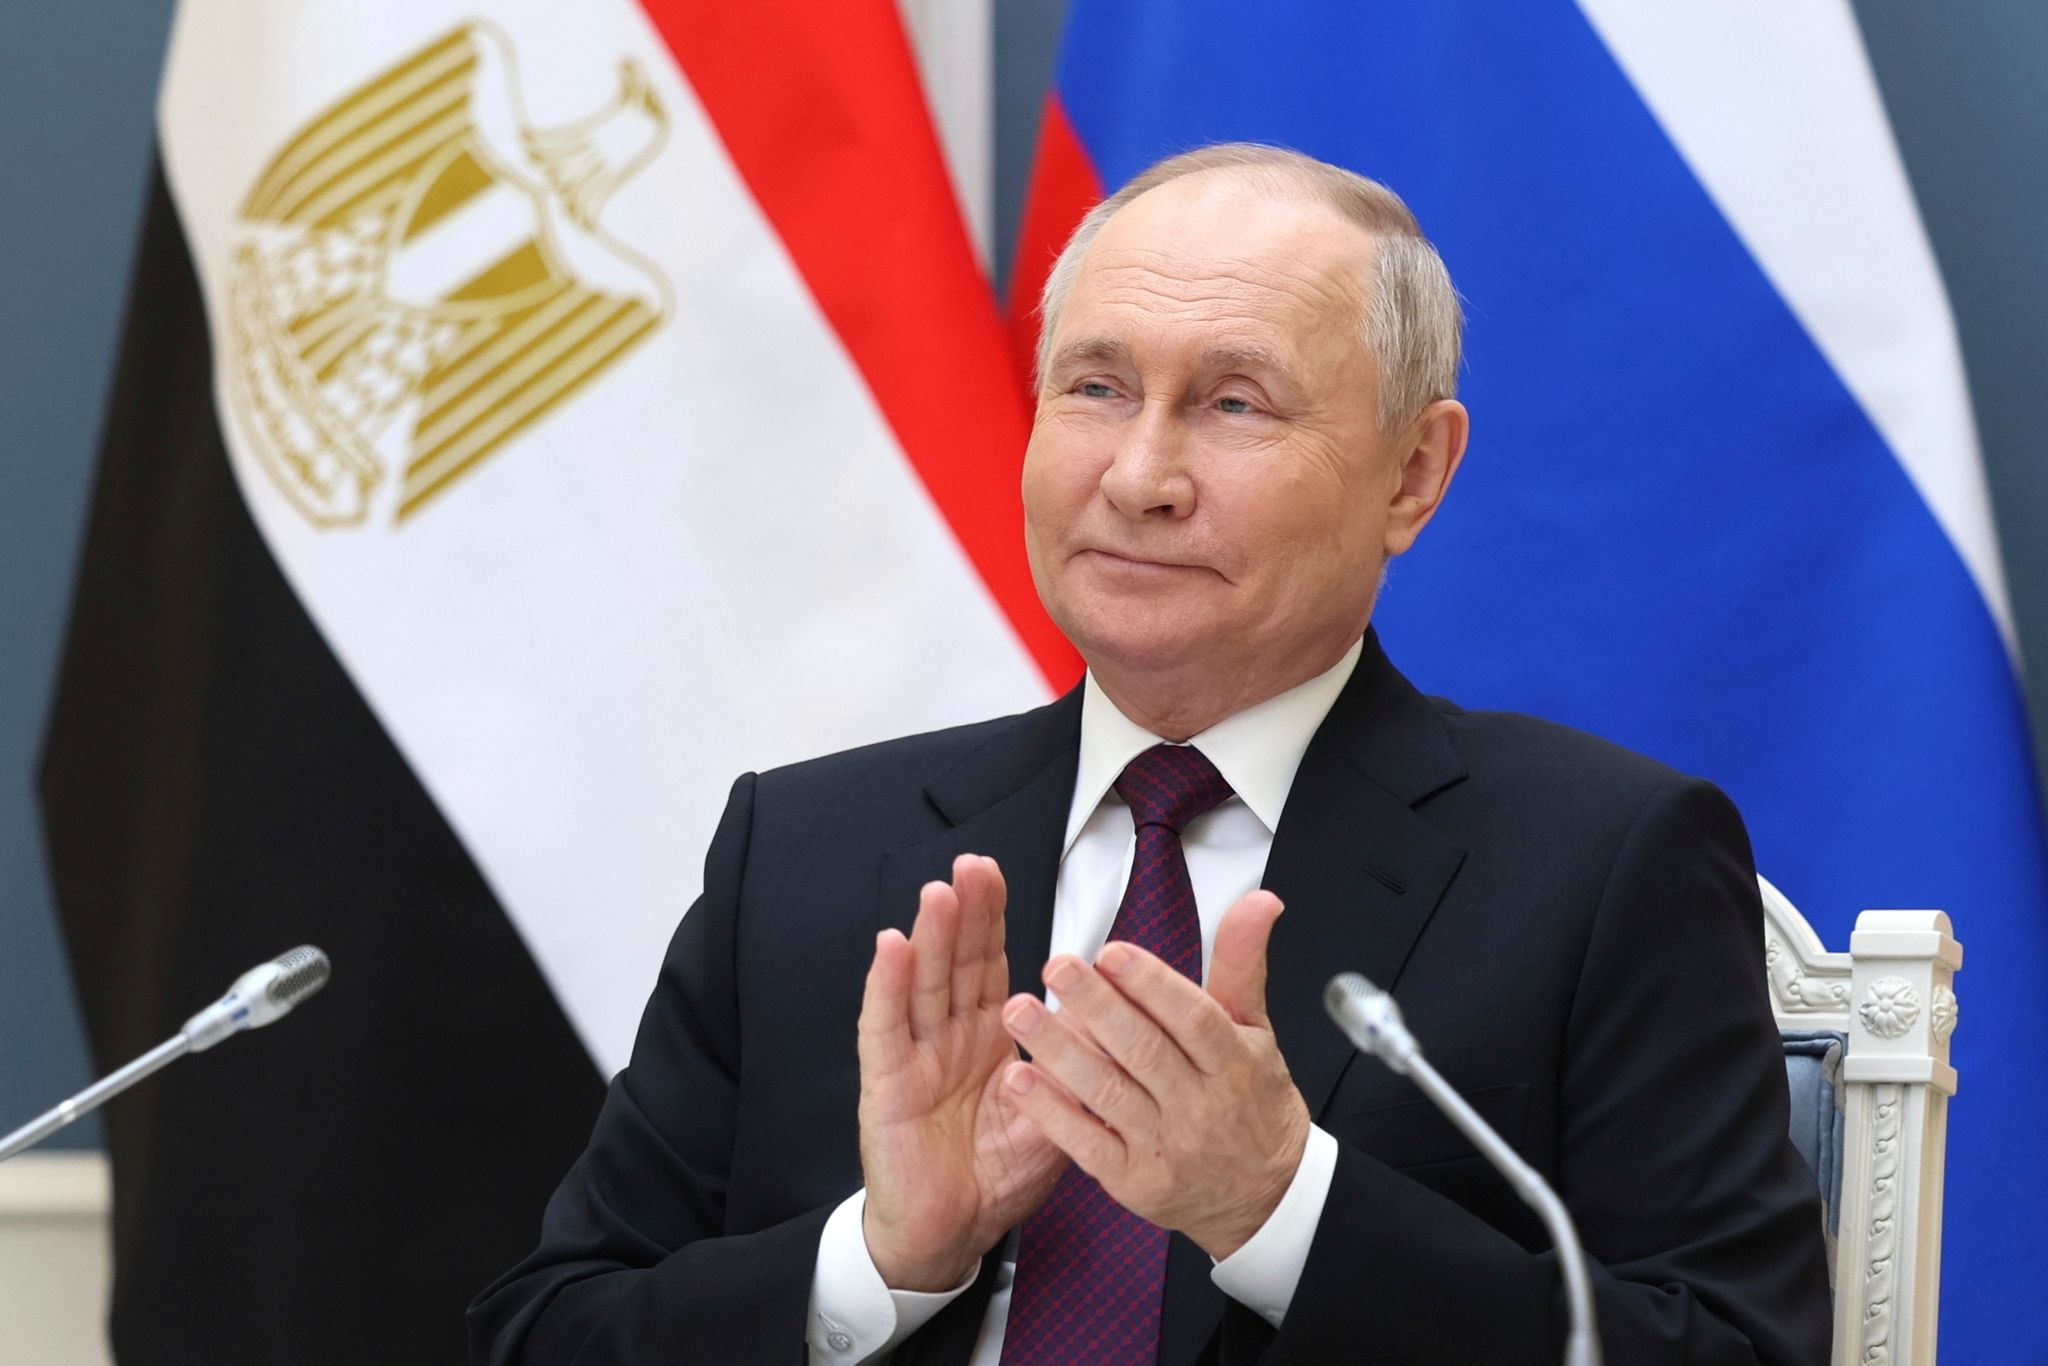 Kremlchef Putin offiziell zur Präsidentenwahl zugelassen